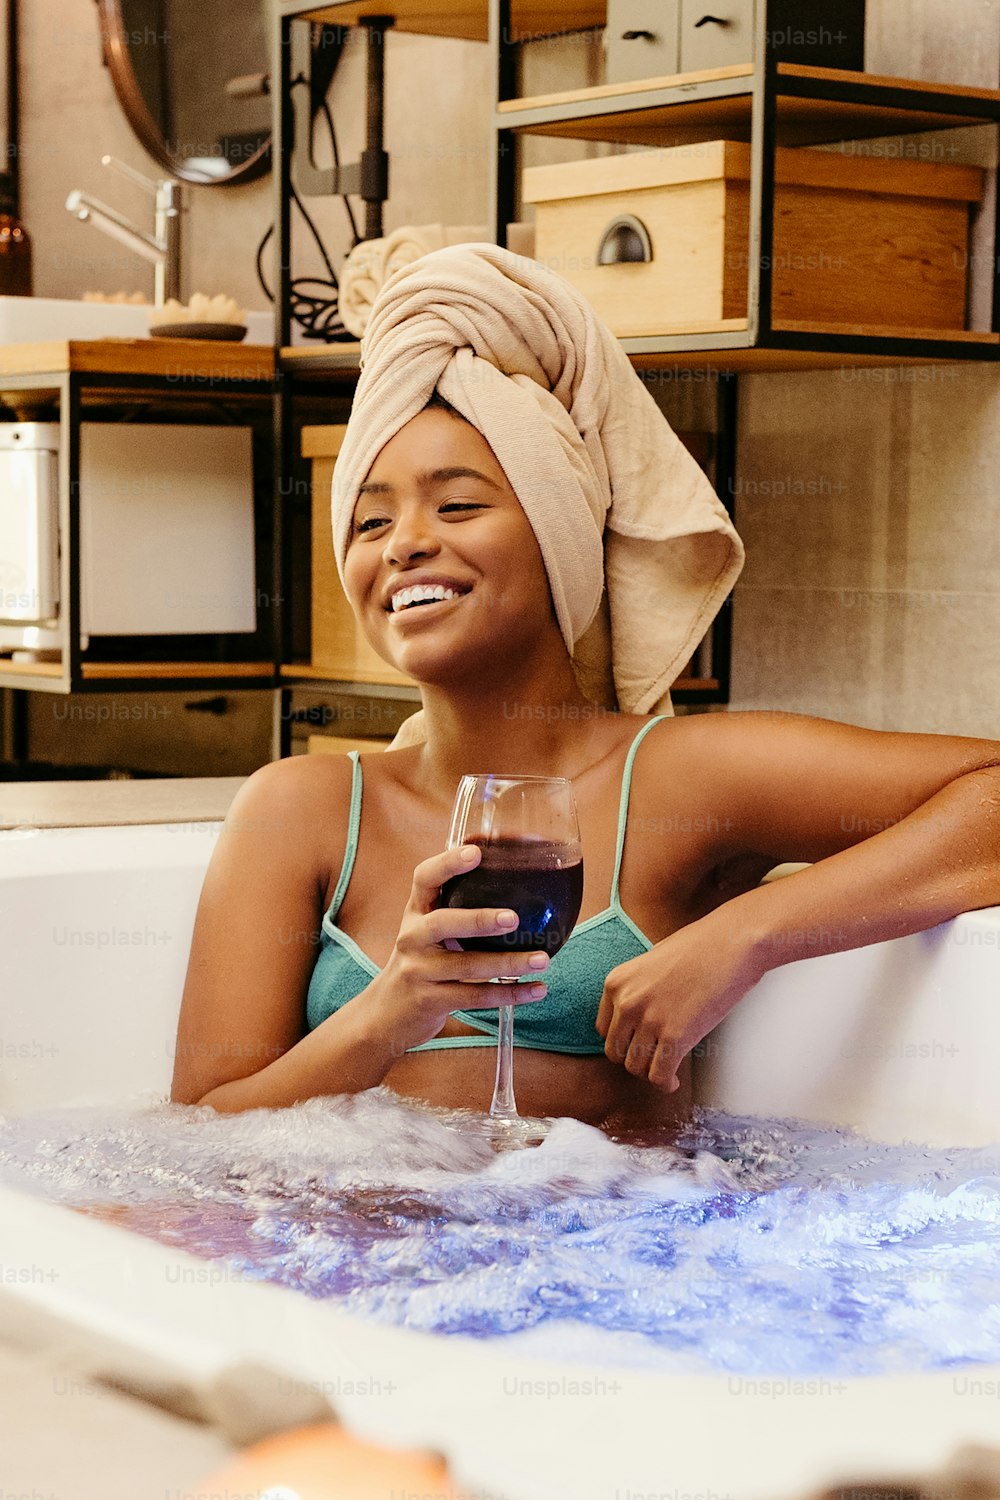 Una mujer sentada en una bañera sosteniendo una copa de vino